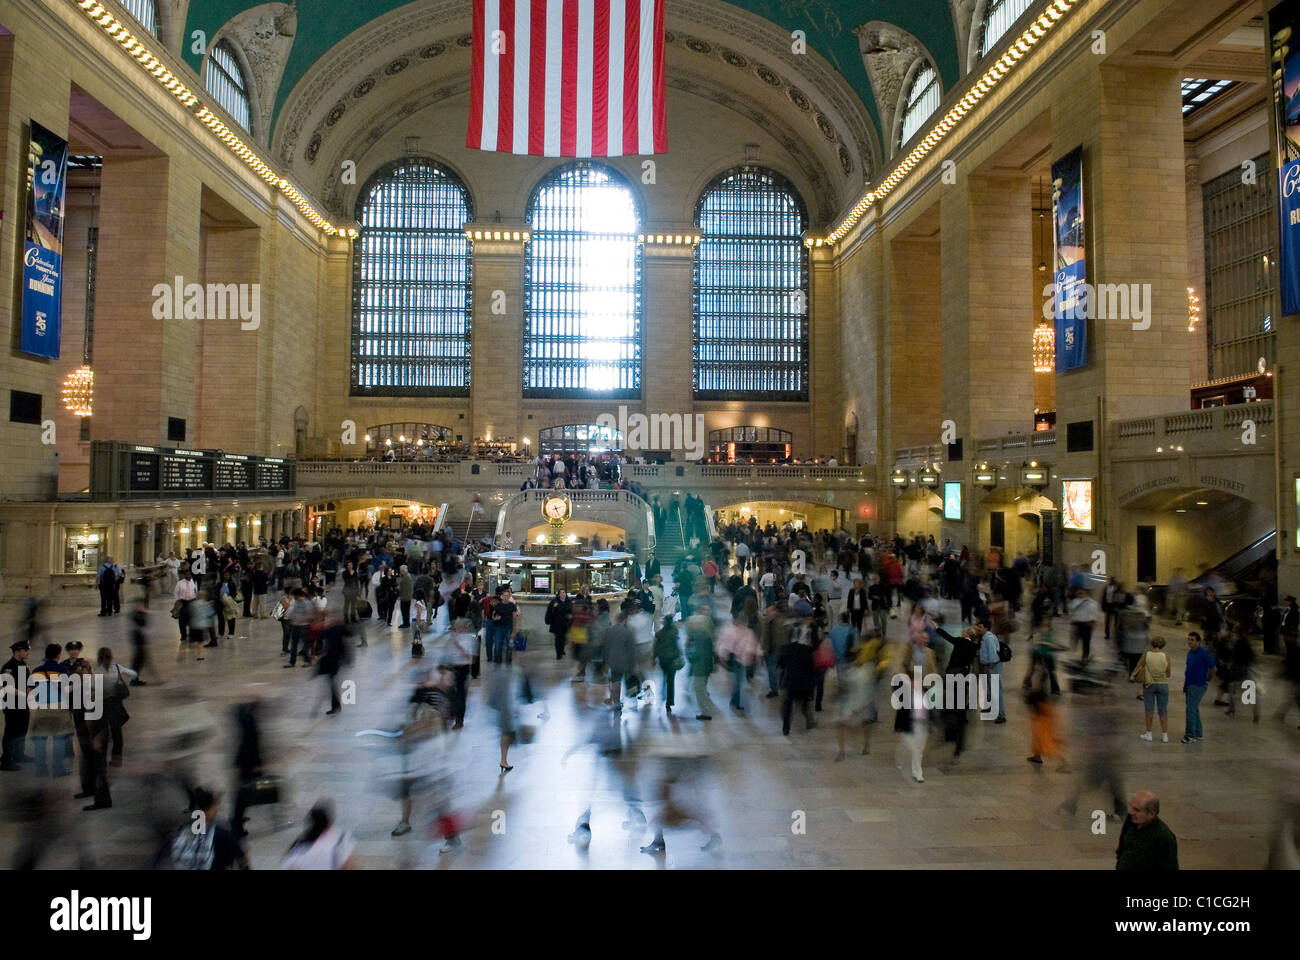 La foule du hall principal de la gare Grand Central Station, New York City, USA Banque D'Images